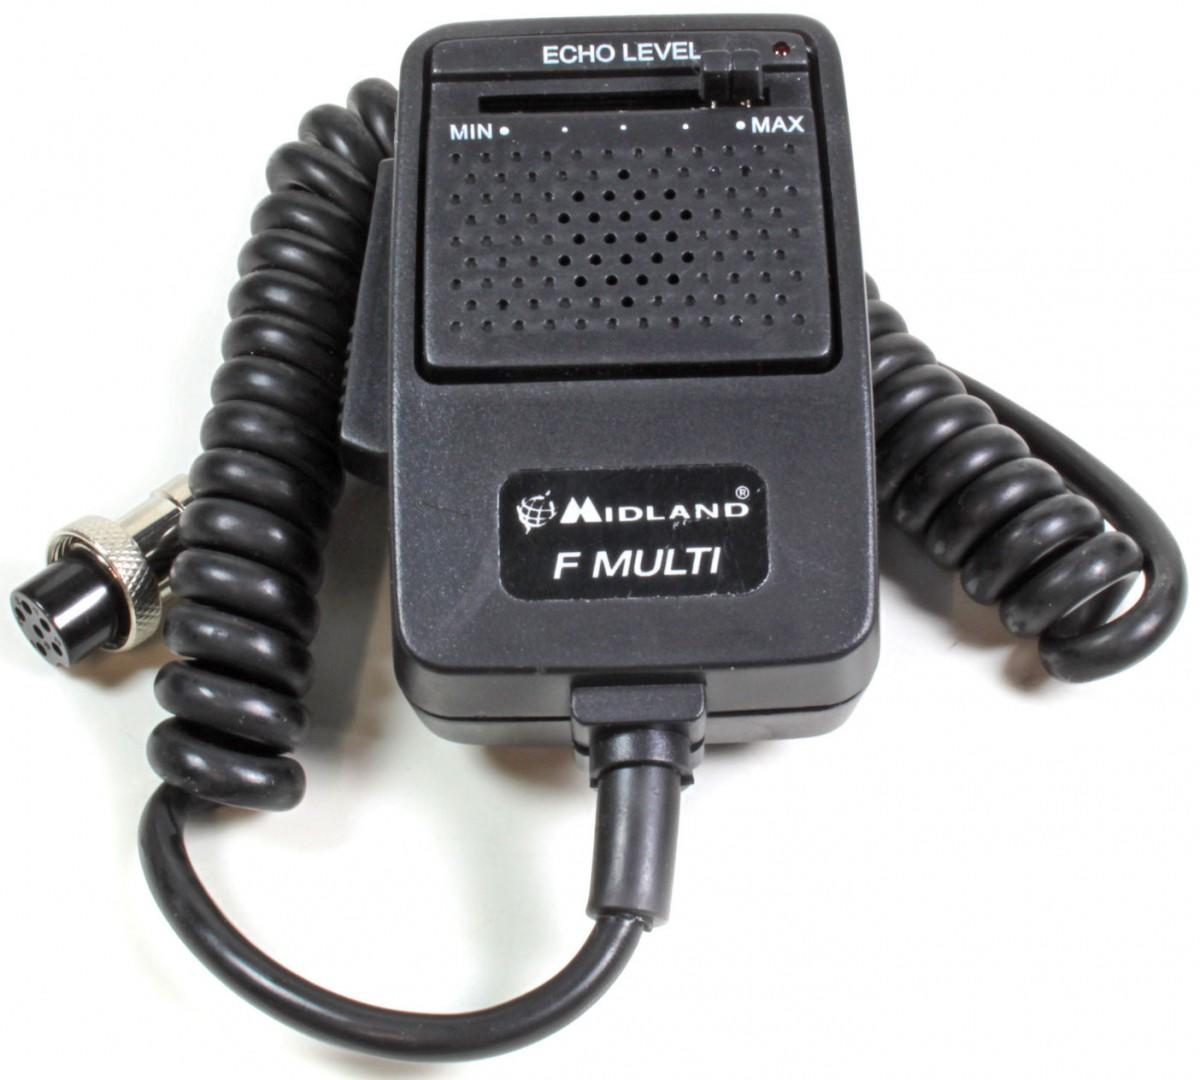 Midland Radio Pack GB1 PMR446 Black